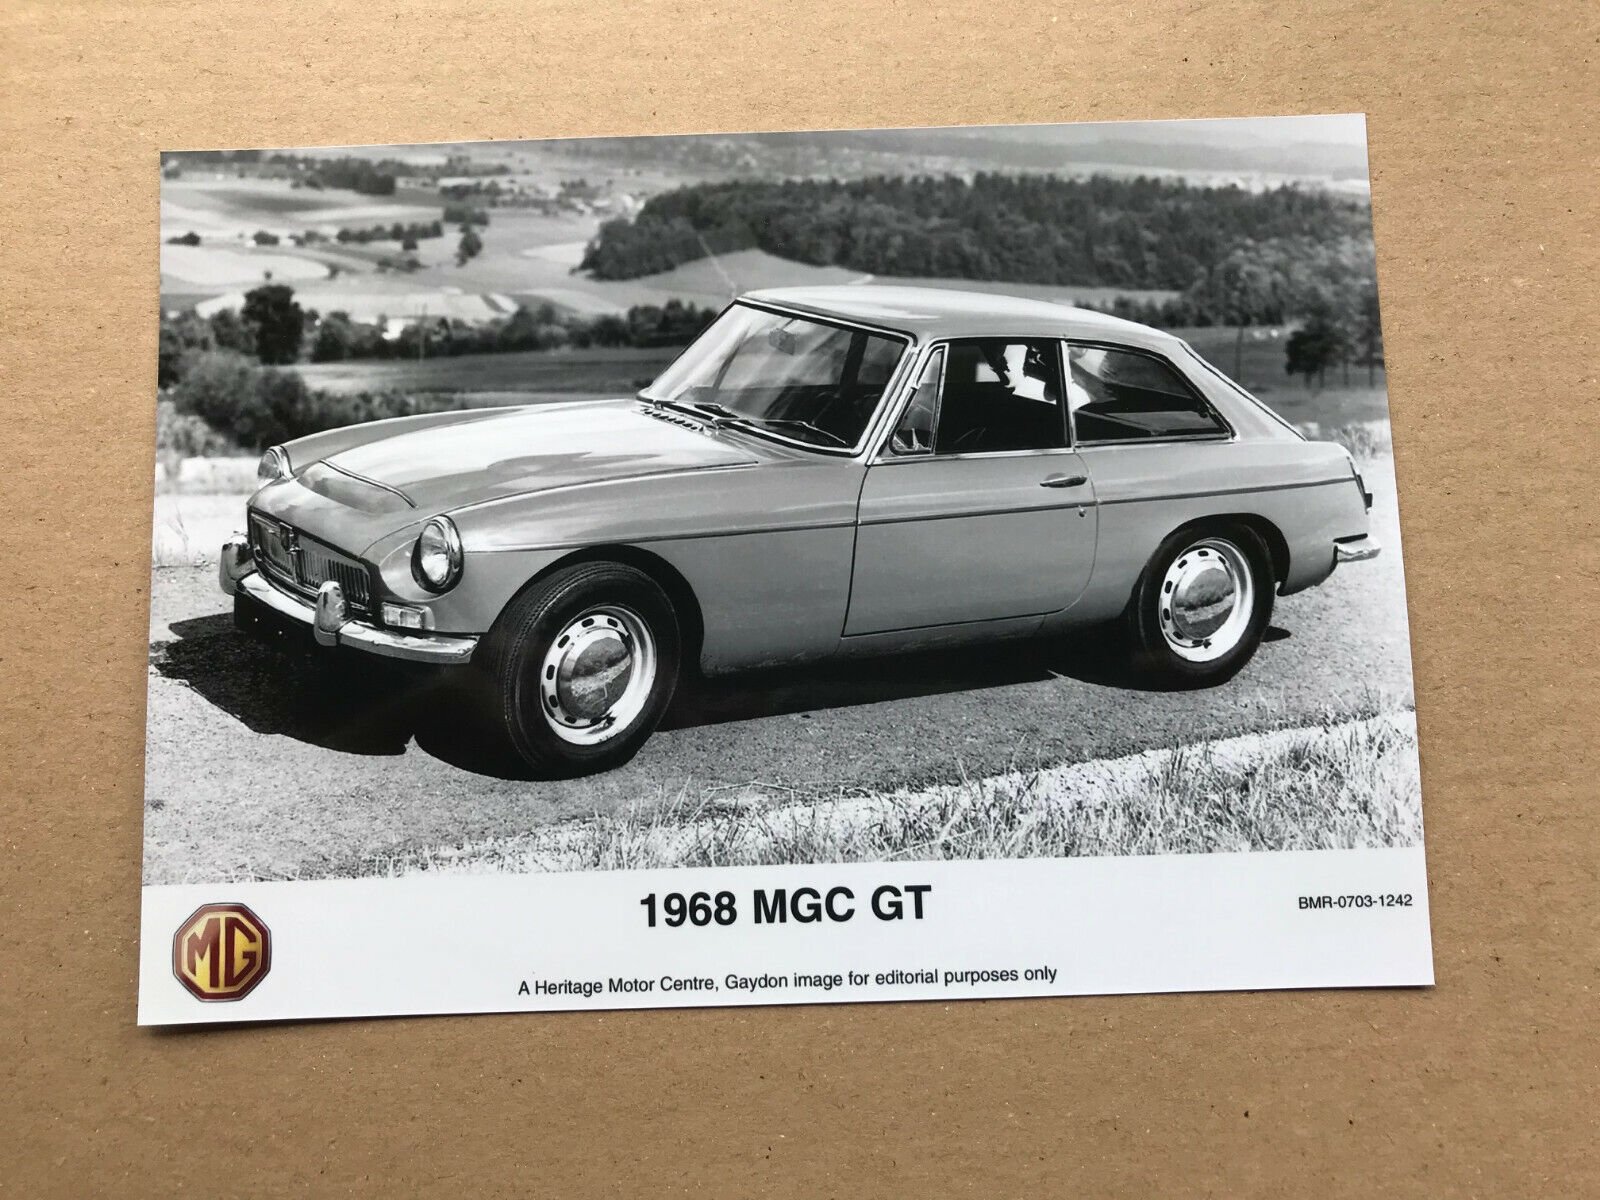 1968 MGC GT Photograph